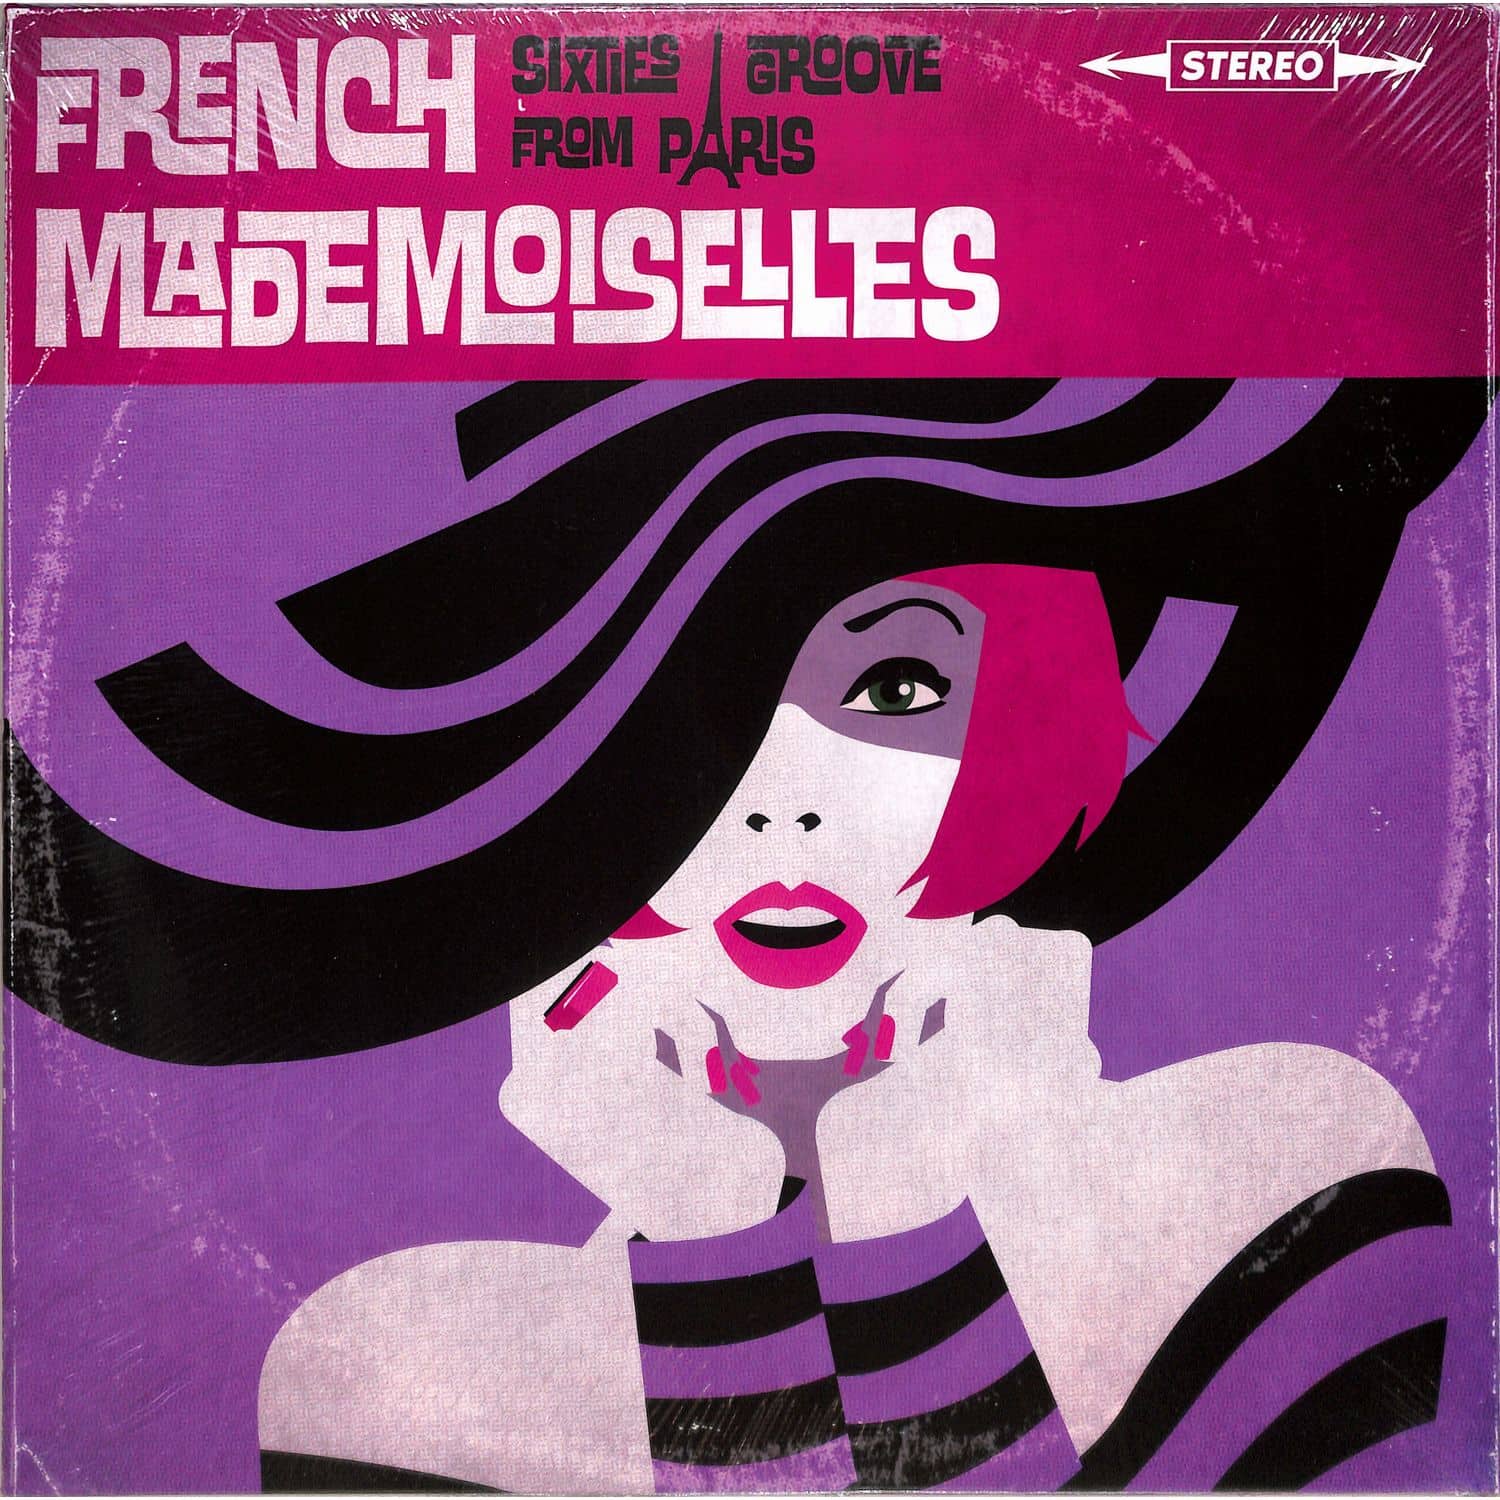 The French Mademoiselles - FEMMES DE PARIS 